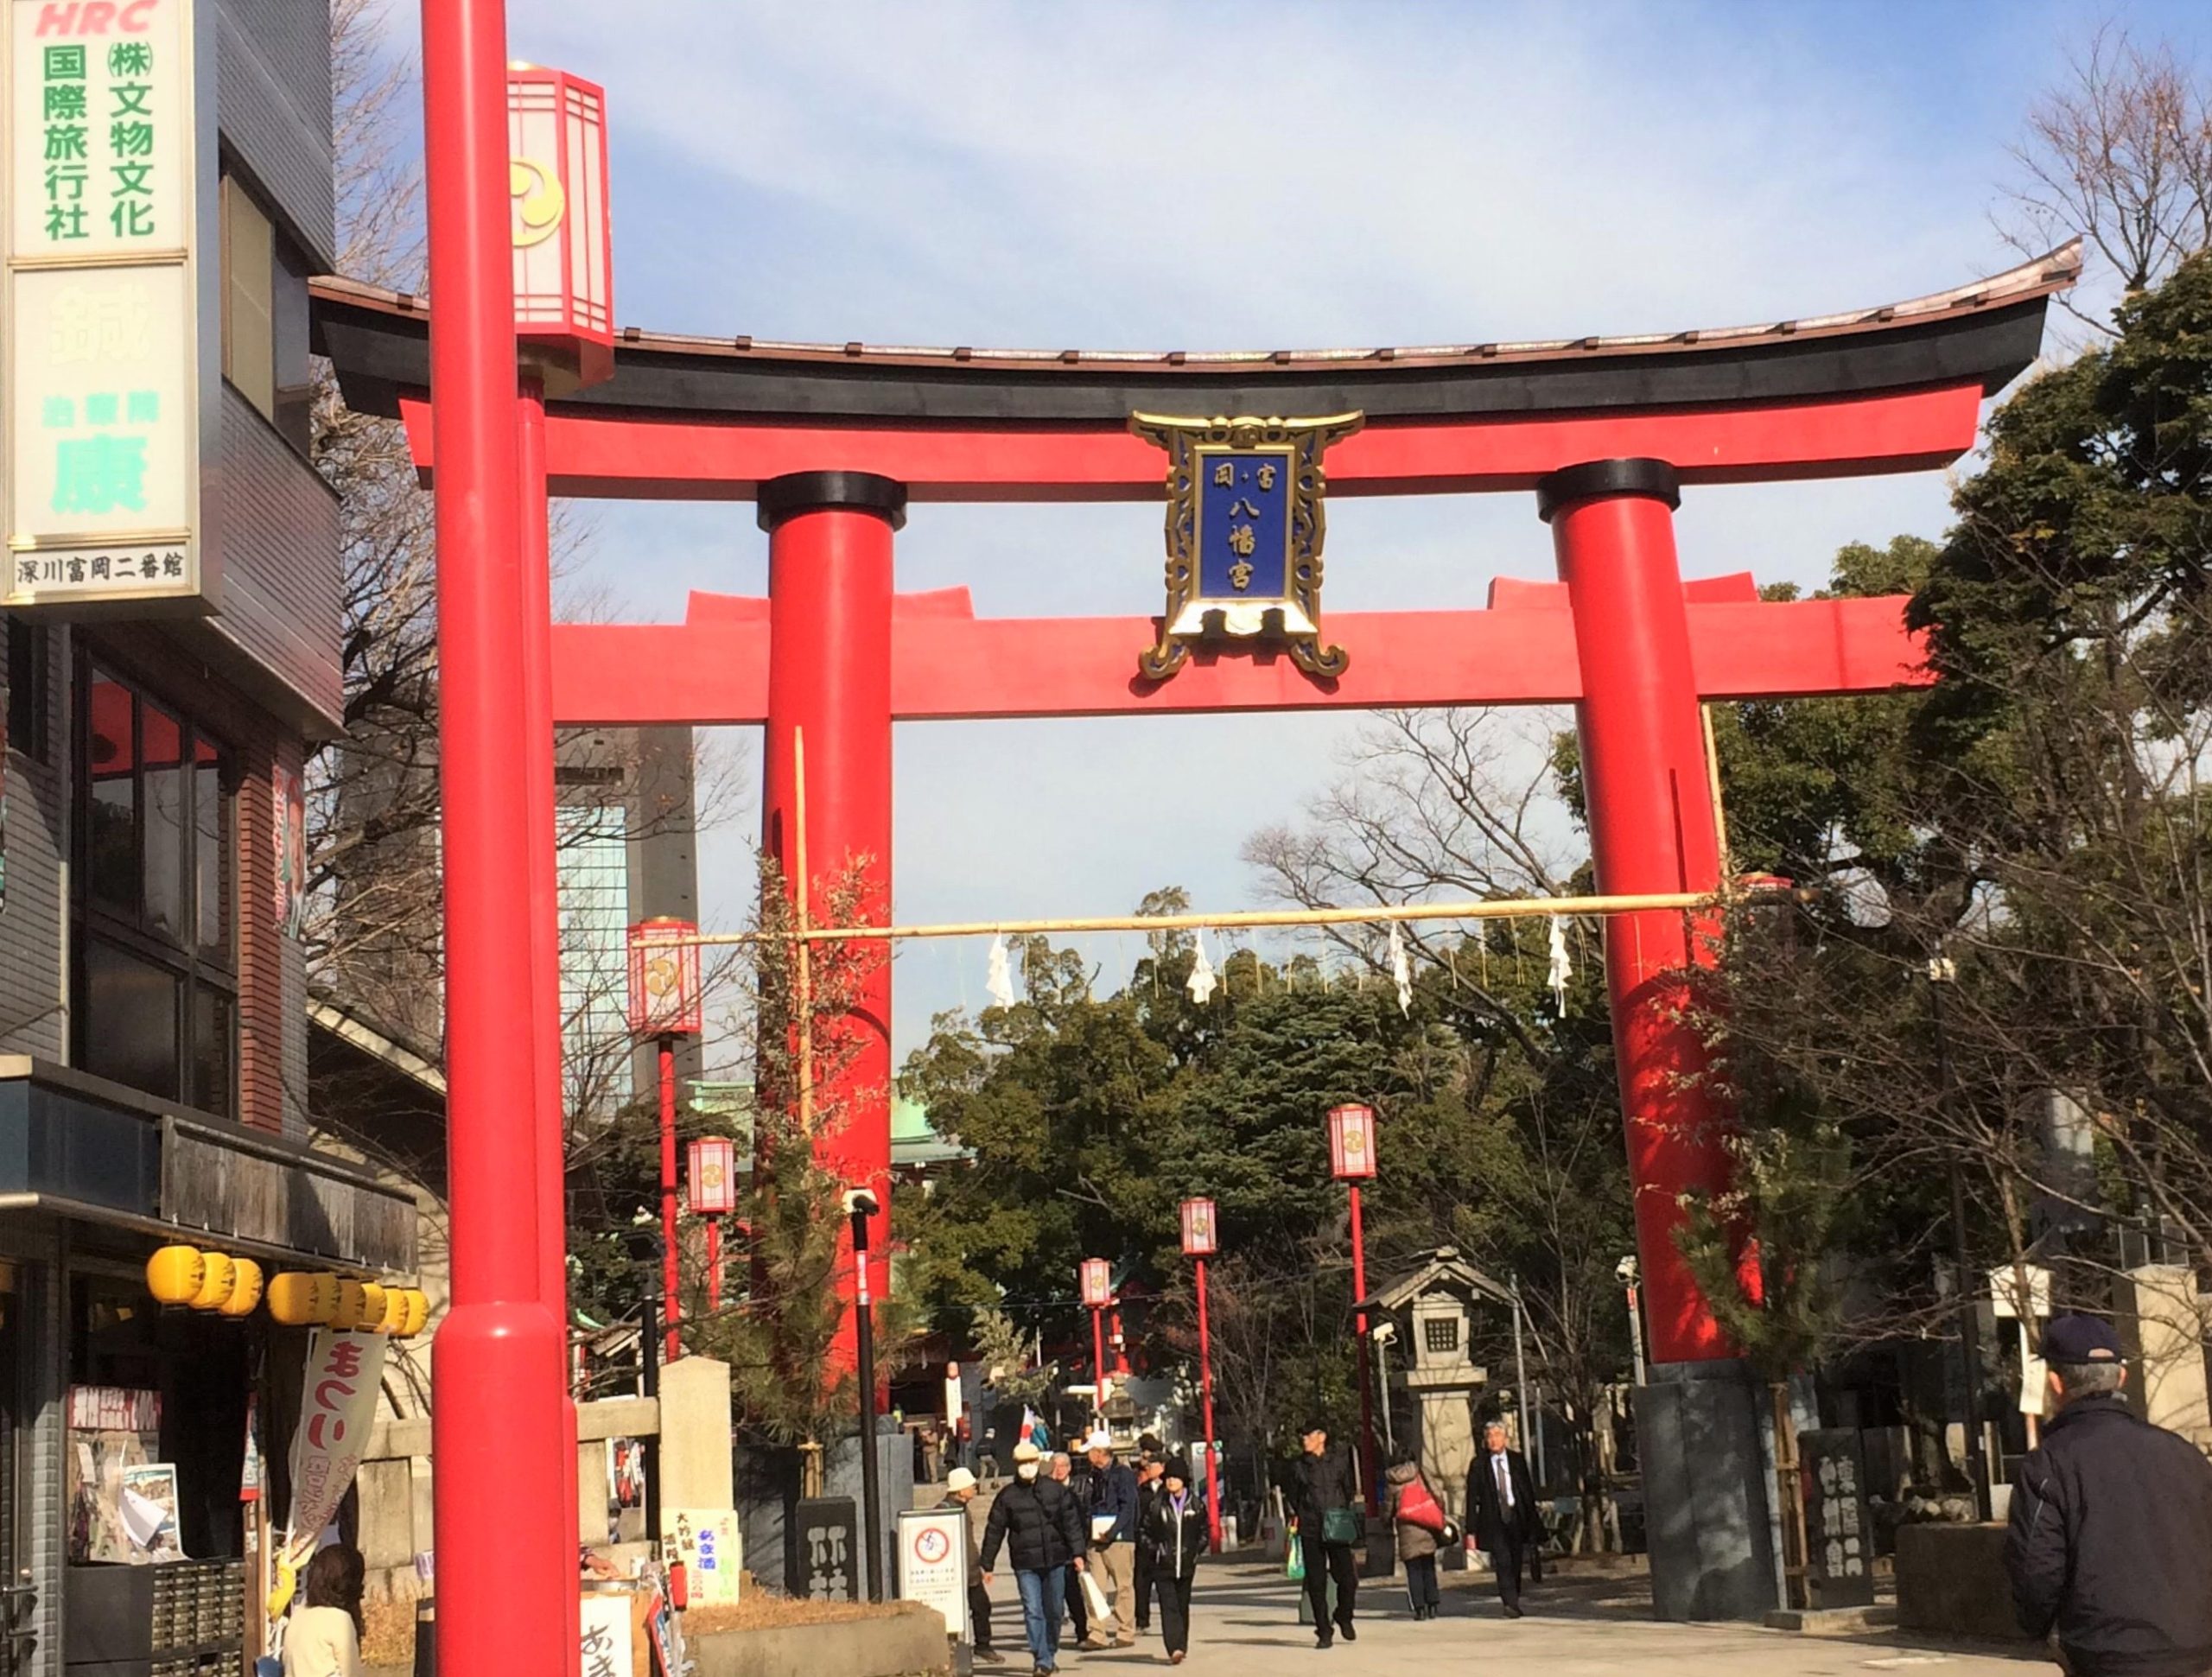 意外と知らない鳥居の種類 神明鳥居と明神鳥居 寺社intokyo 東京歴史散歩